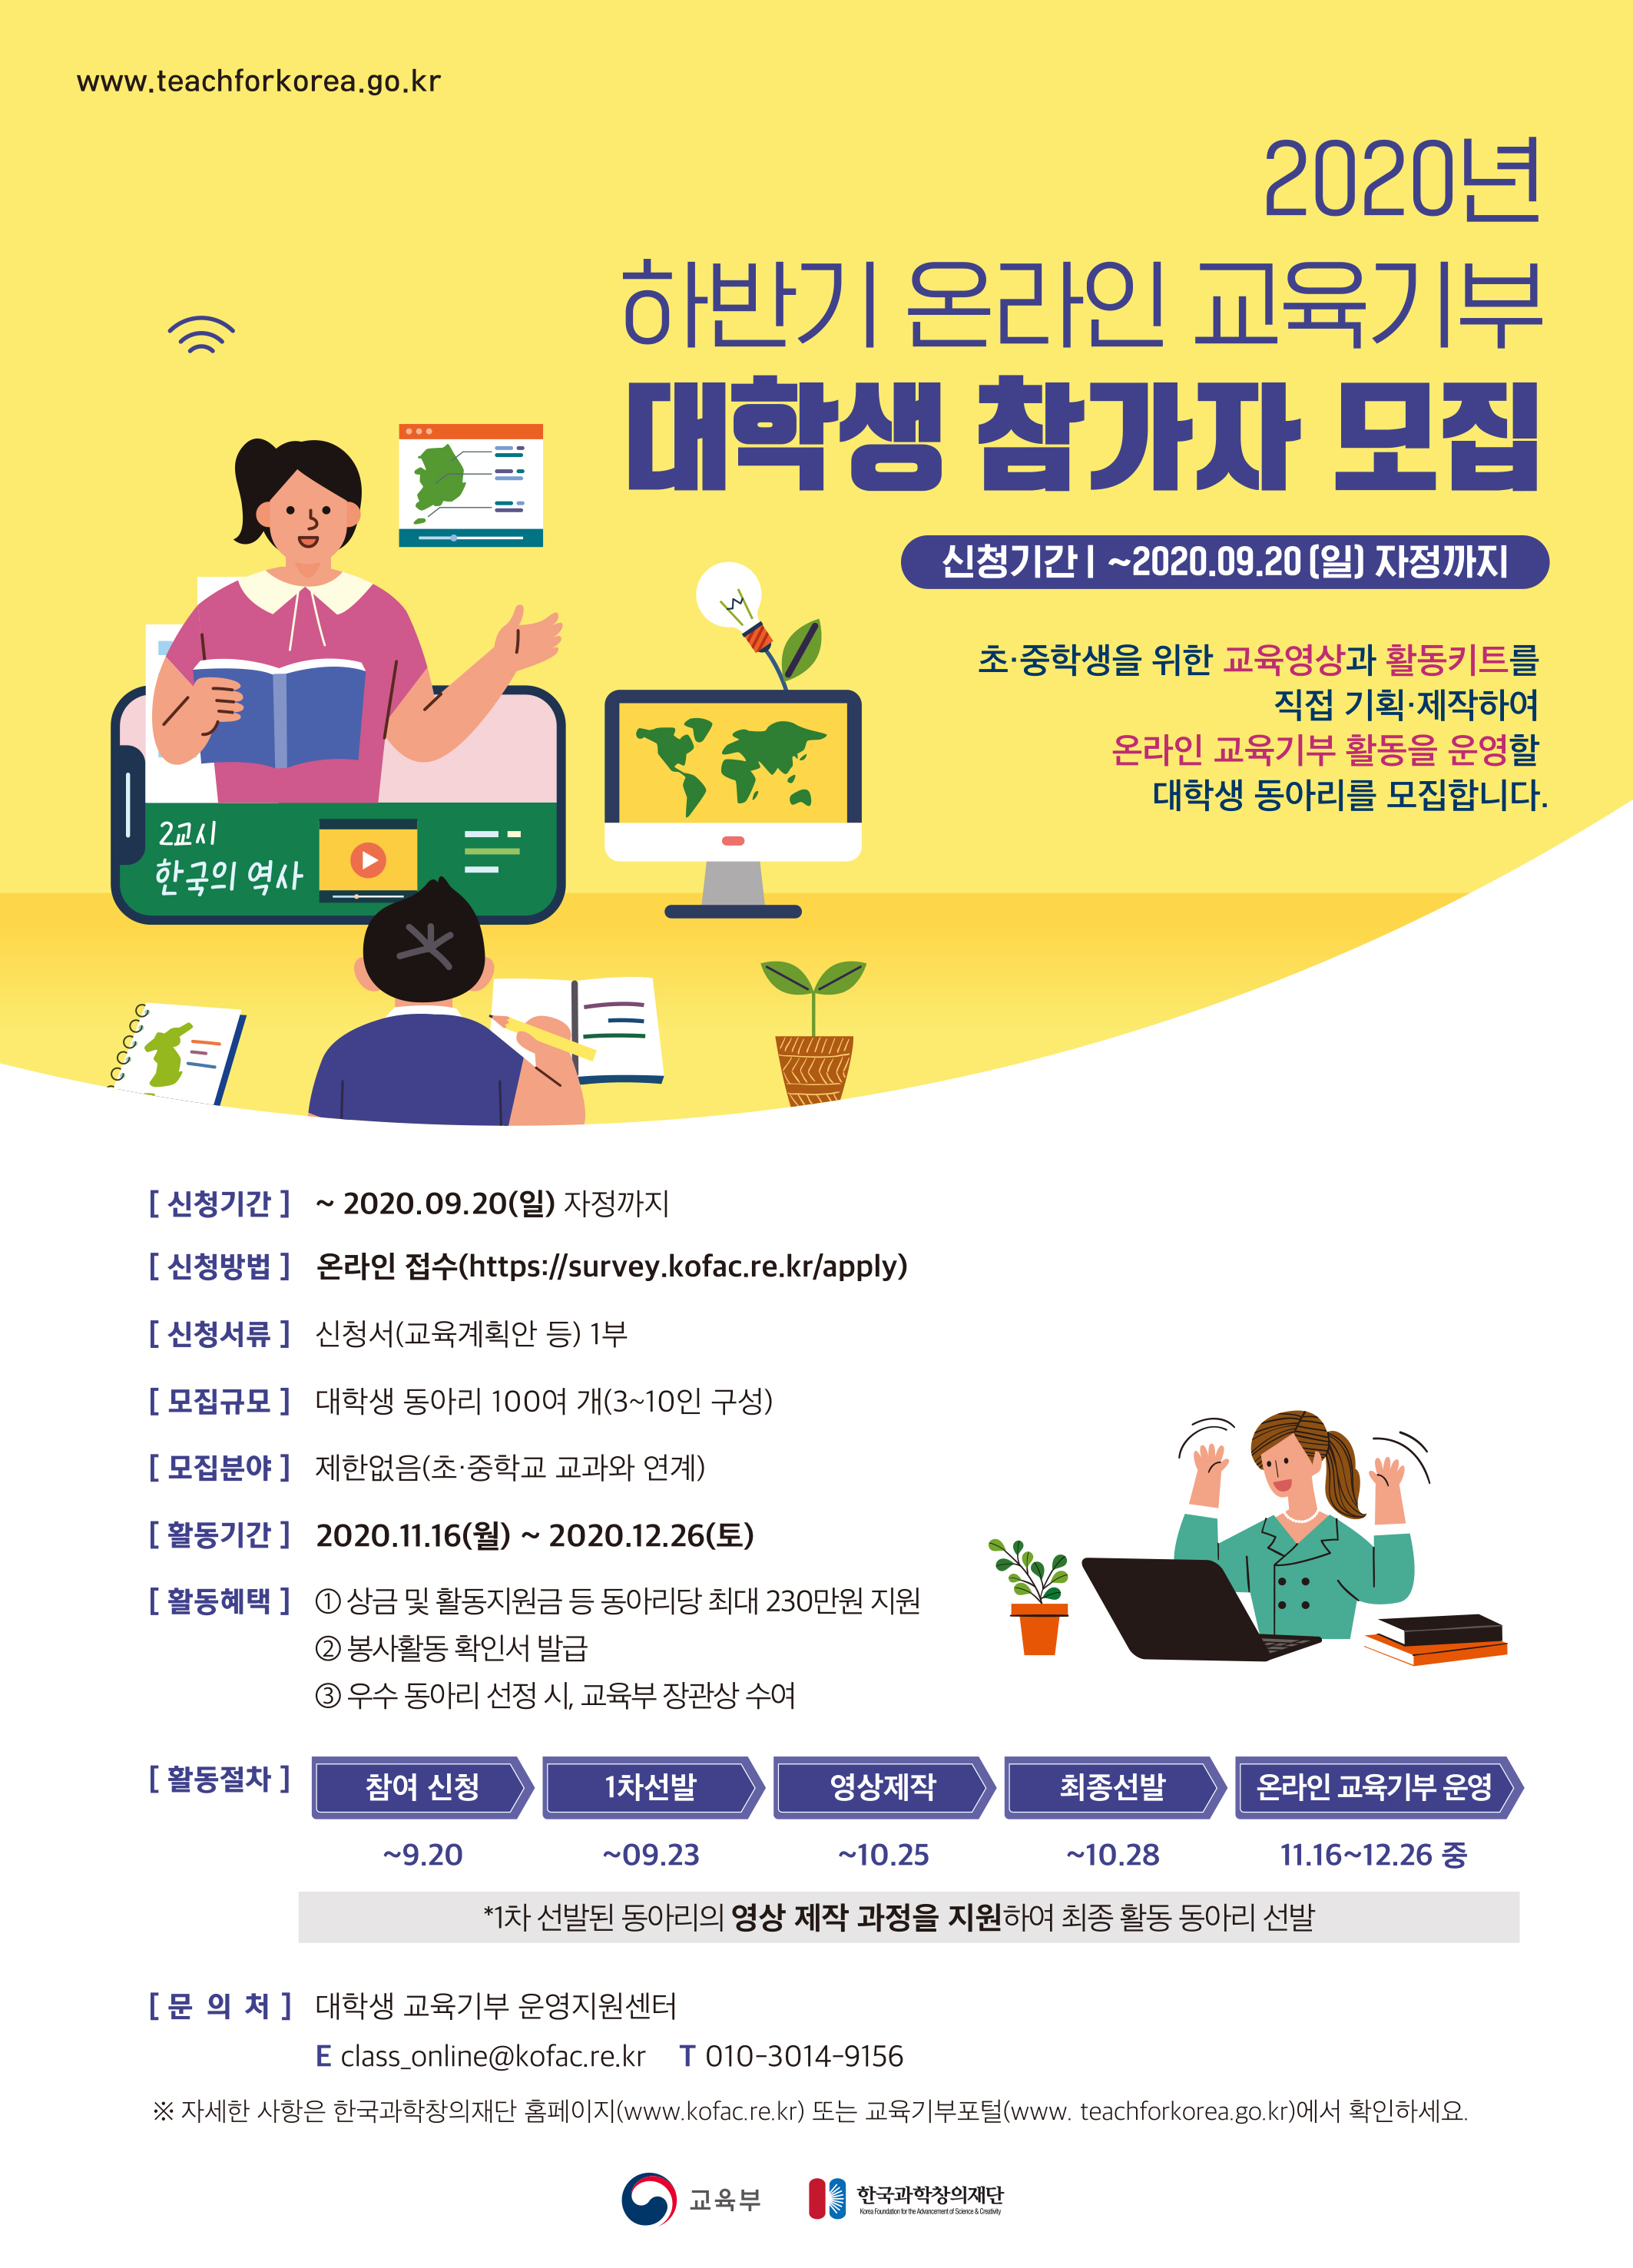 2020년 하반기 온라인 교육기부 동아리 모집 안내(한국과학창의재단 주관)